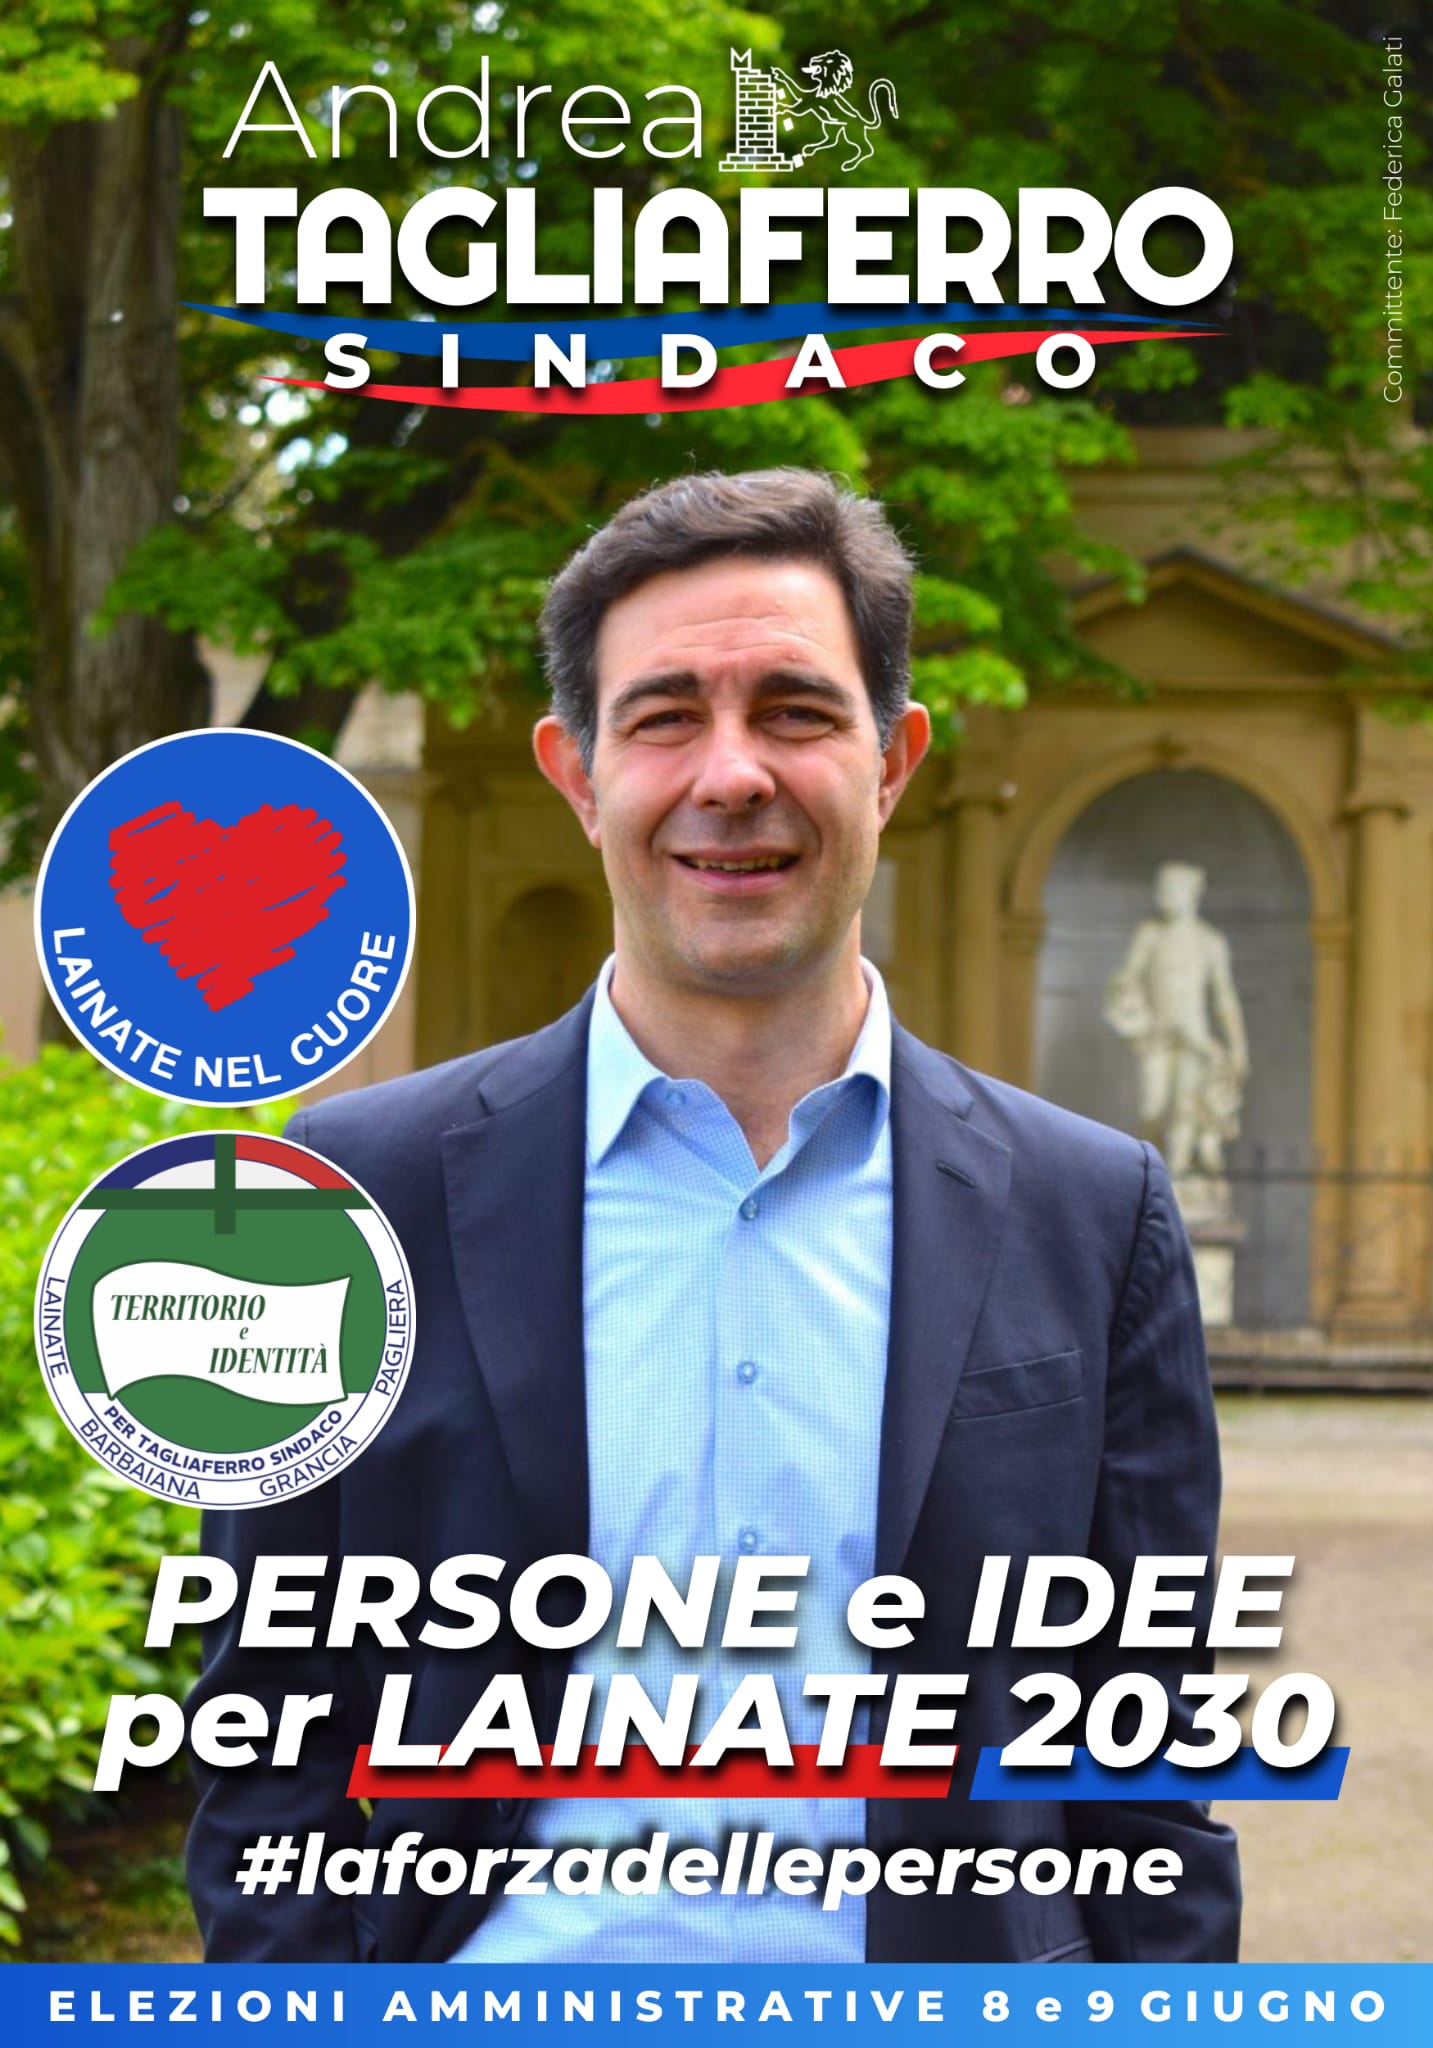 Candidato Sindaco Andrea Tagliaferro